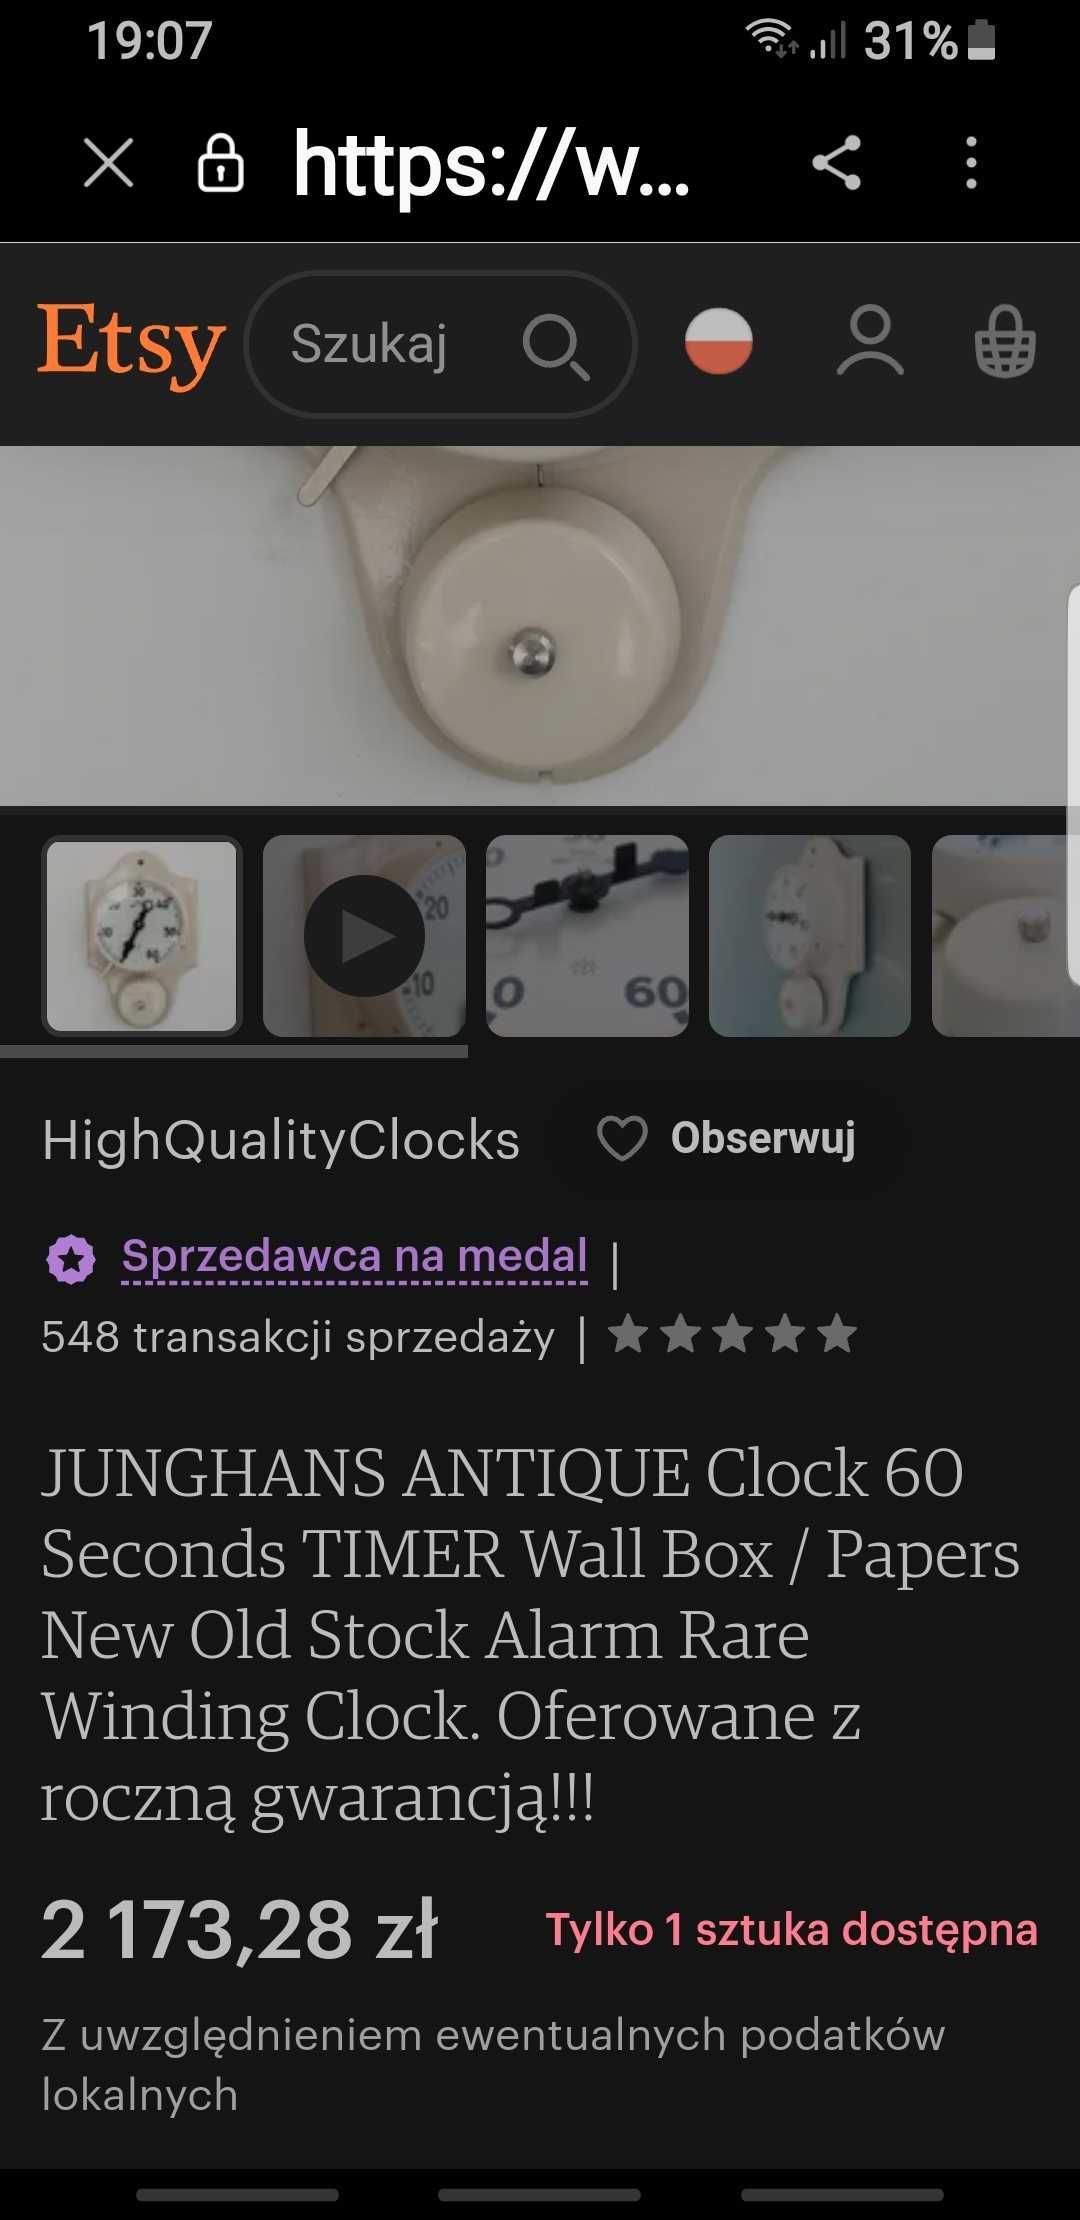 Unikat-Junghans zegar 60 sek. z alarmem